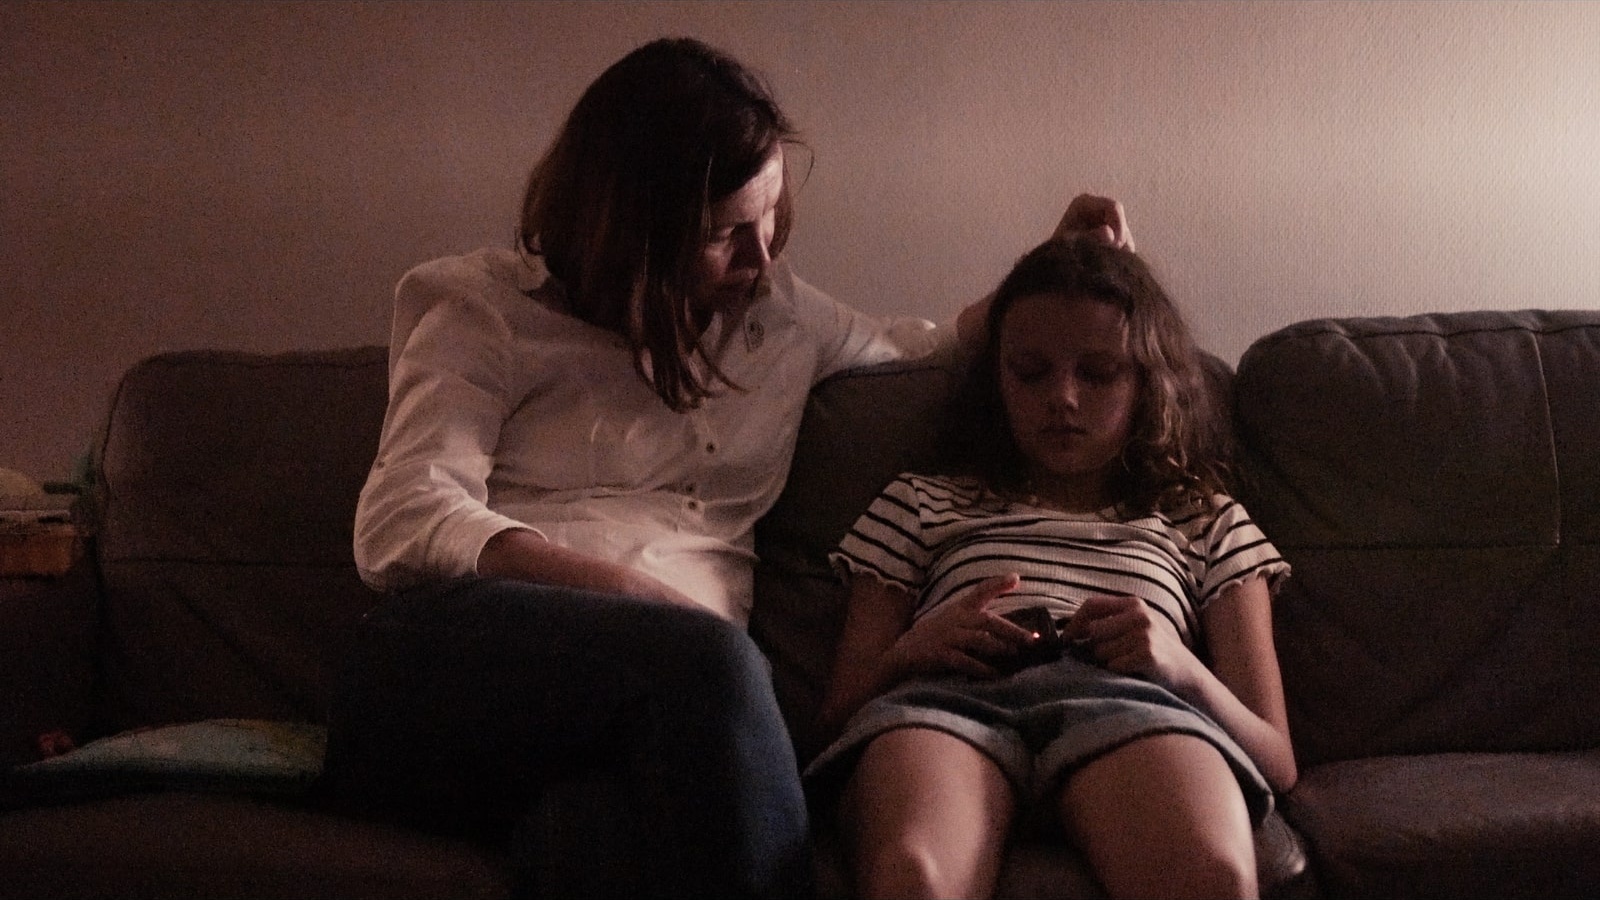 rus: Мати й донька сидять на дивані.